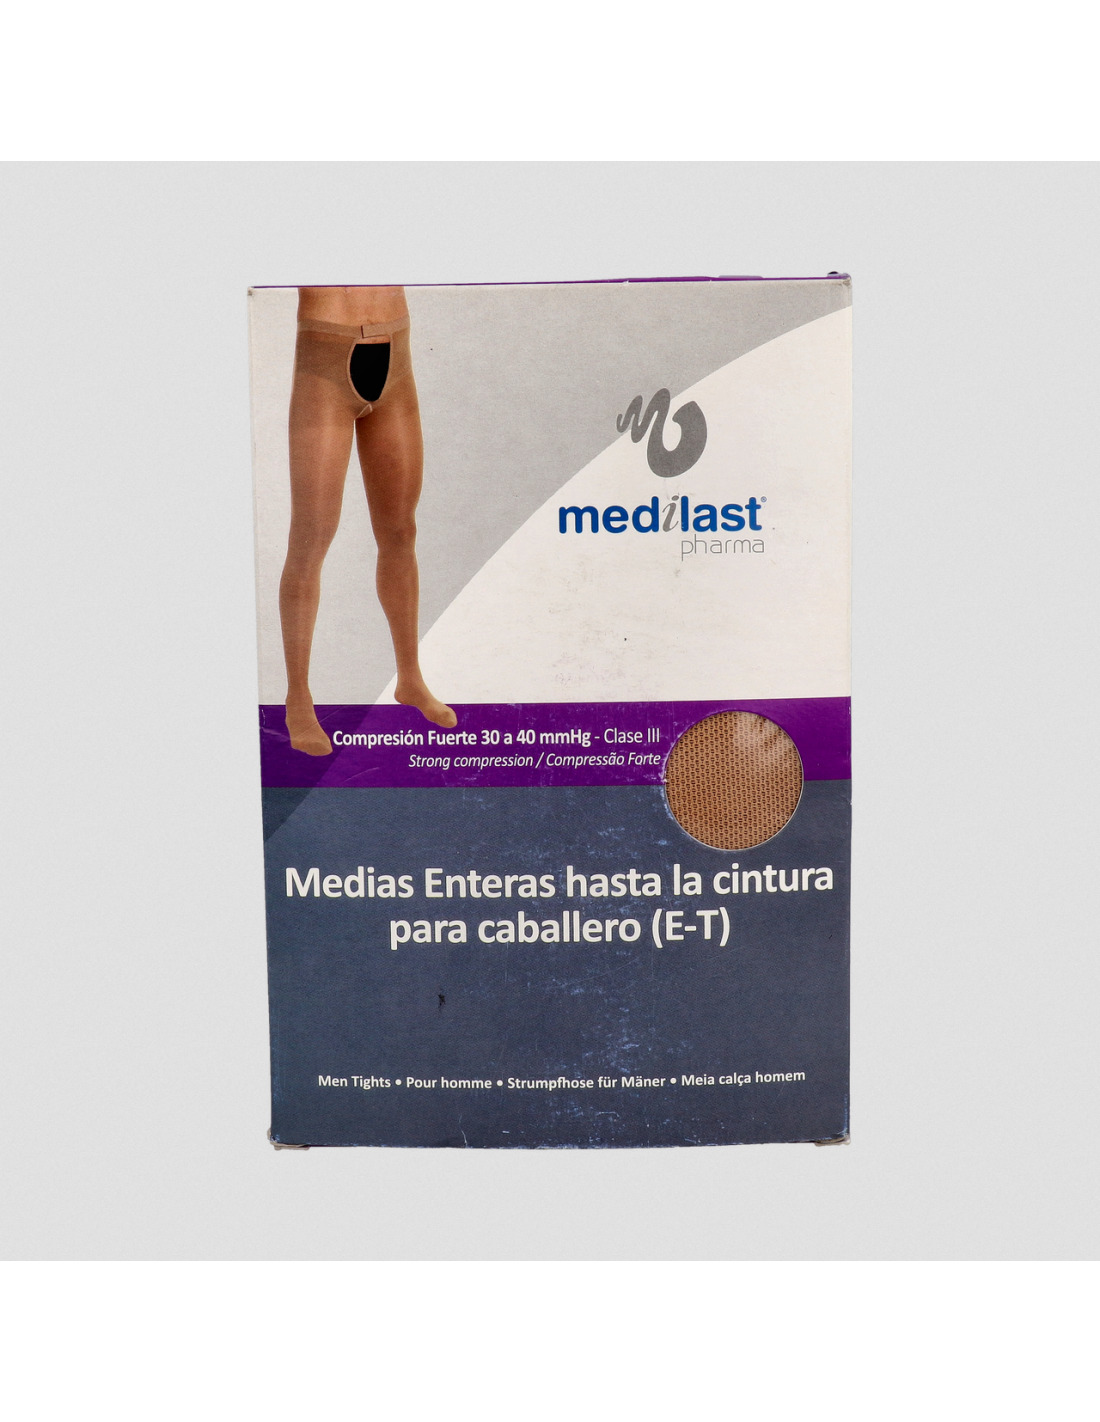 Media pantalón para varices - Media compresión Medical